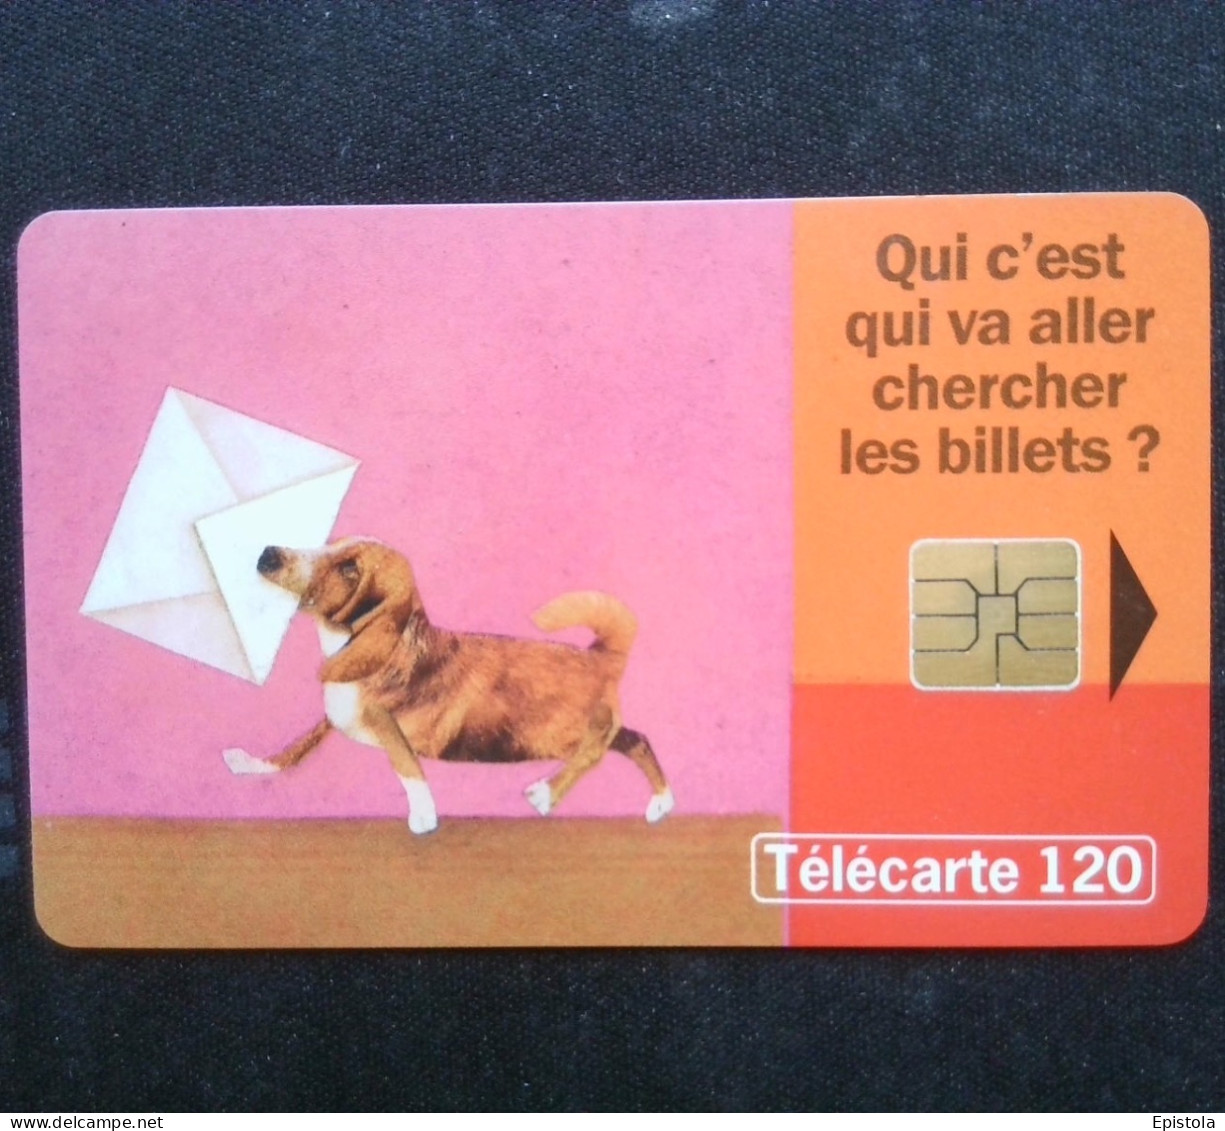 ► France :  Chien Teckel Dog Dachshund - Dogs